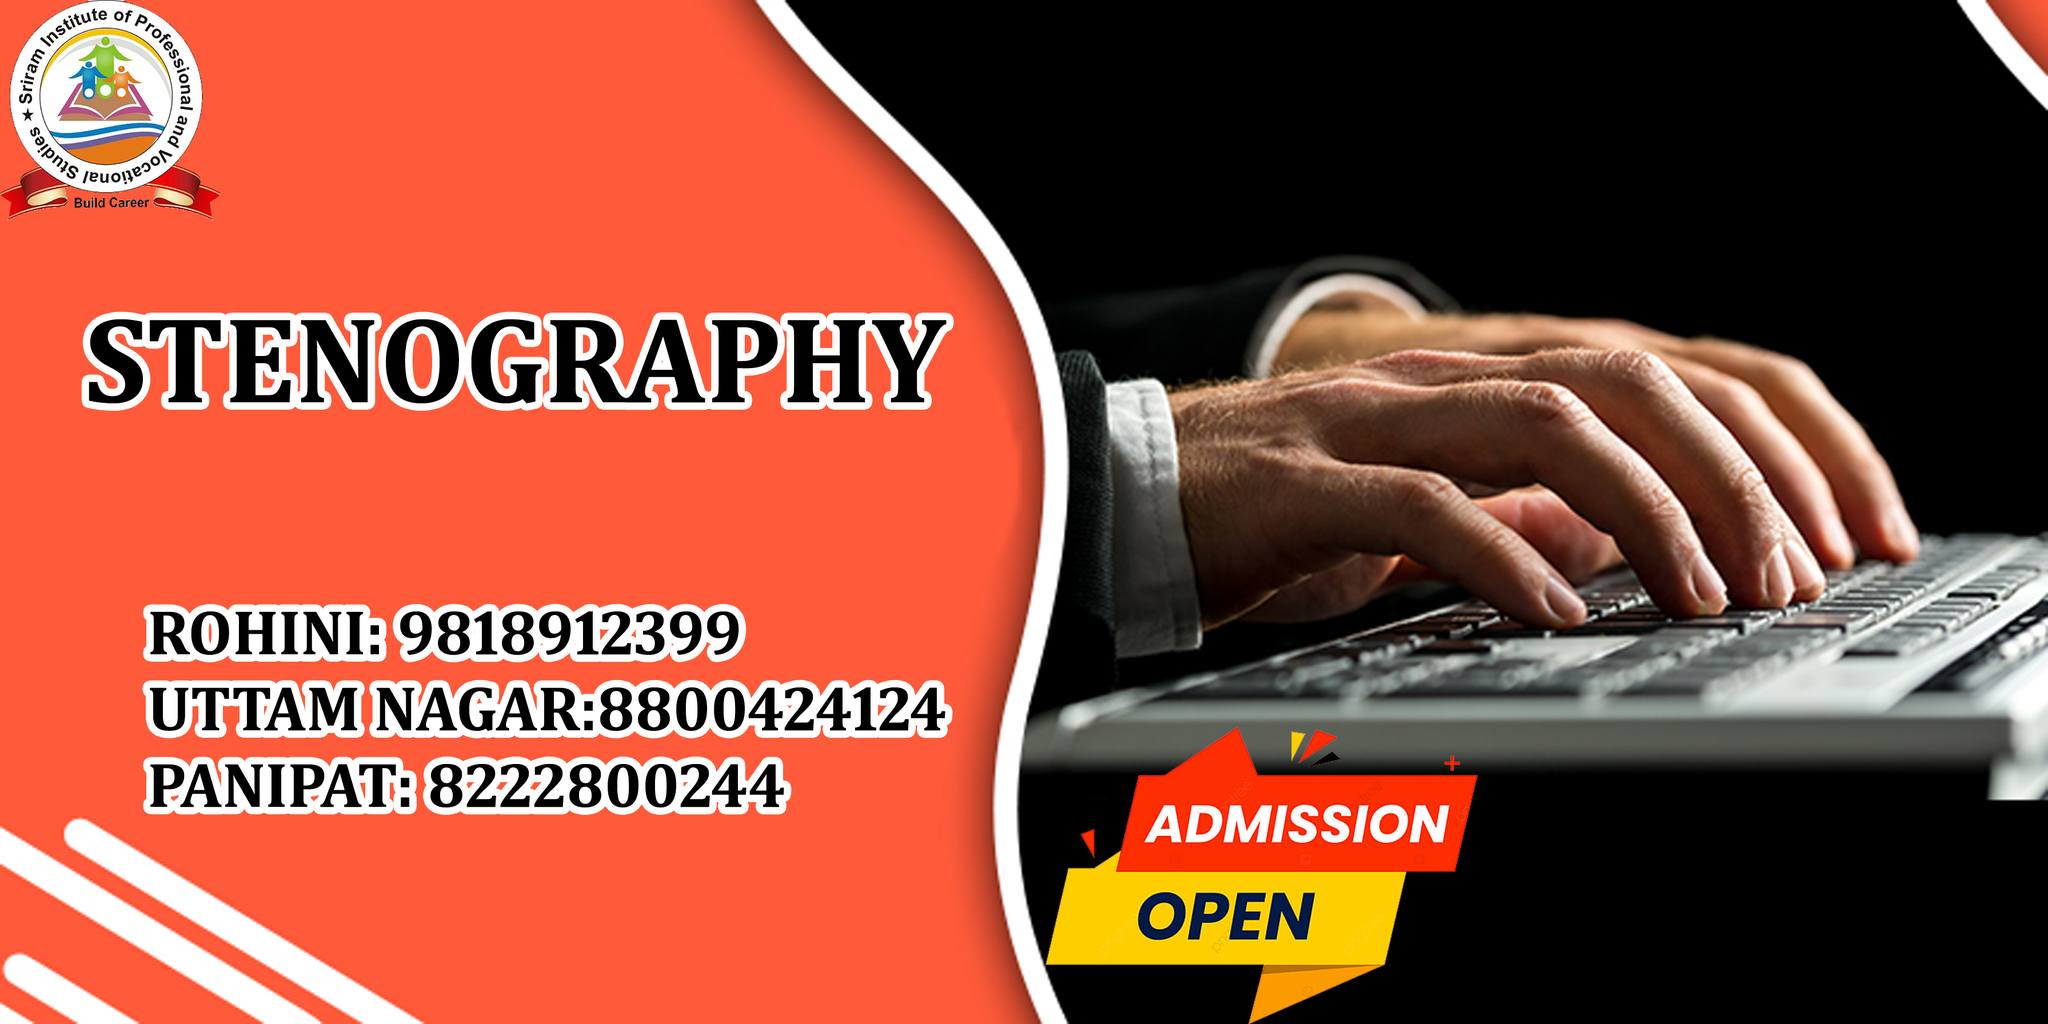 Best stenography course in uttam nagar - Delhi - Delhi ID1522005 4